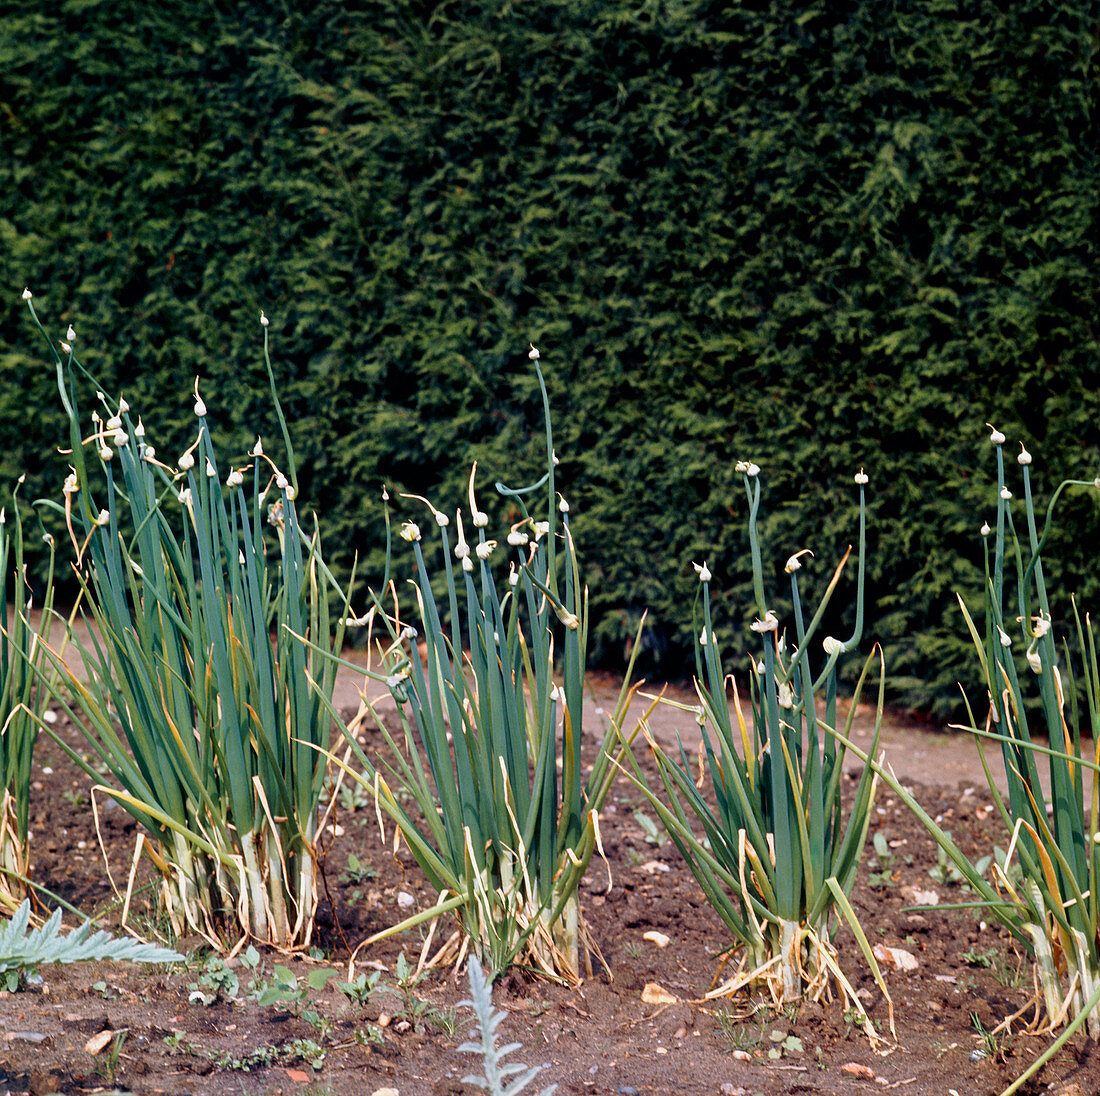 Tree onion (Allium cepa var. aggregatum)